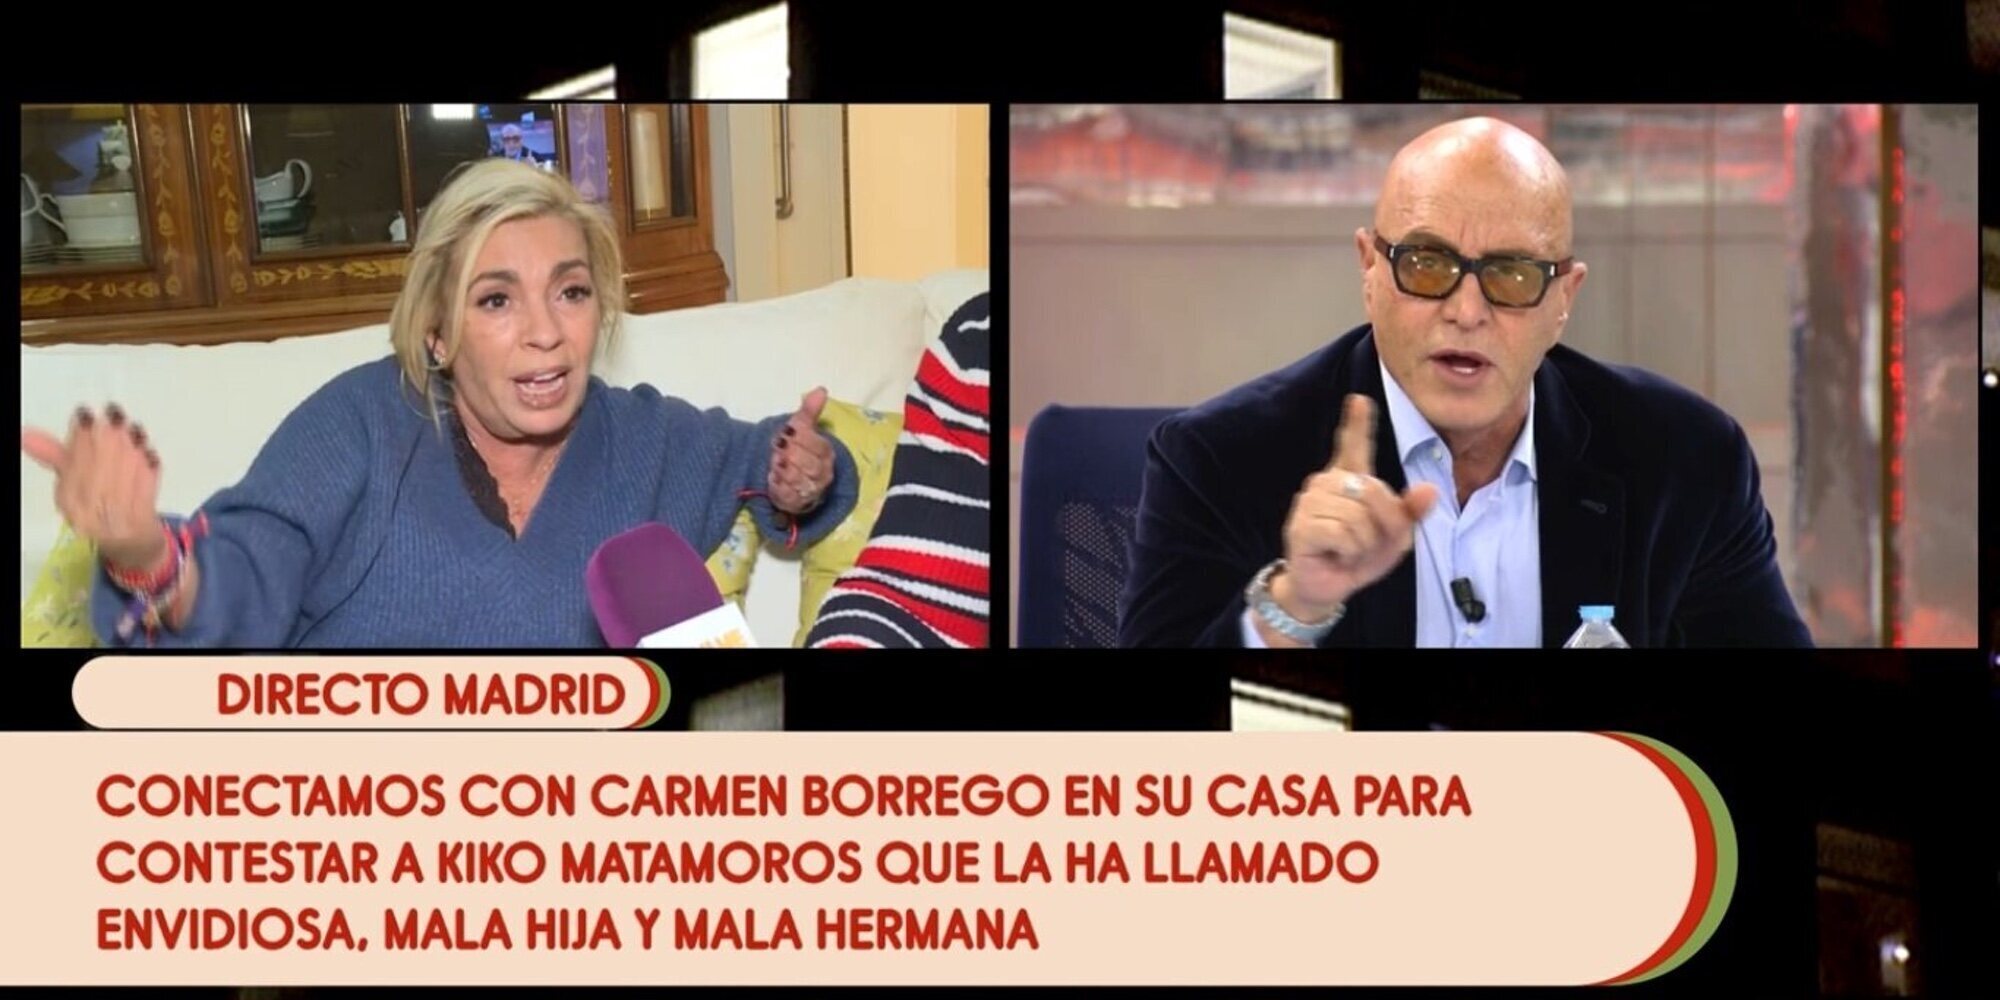 Carmen Borrego vs Kiko Matamoros: "Eres un impresentable, te pasas el día echando mierda"